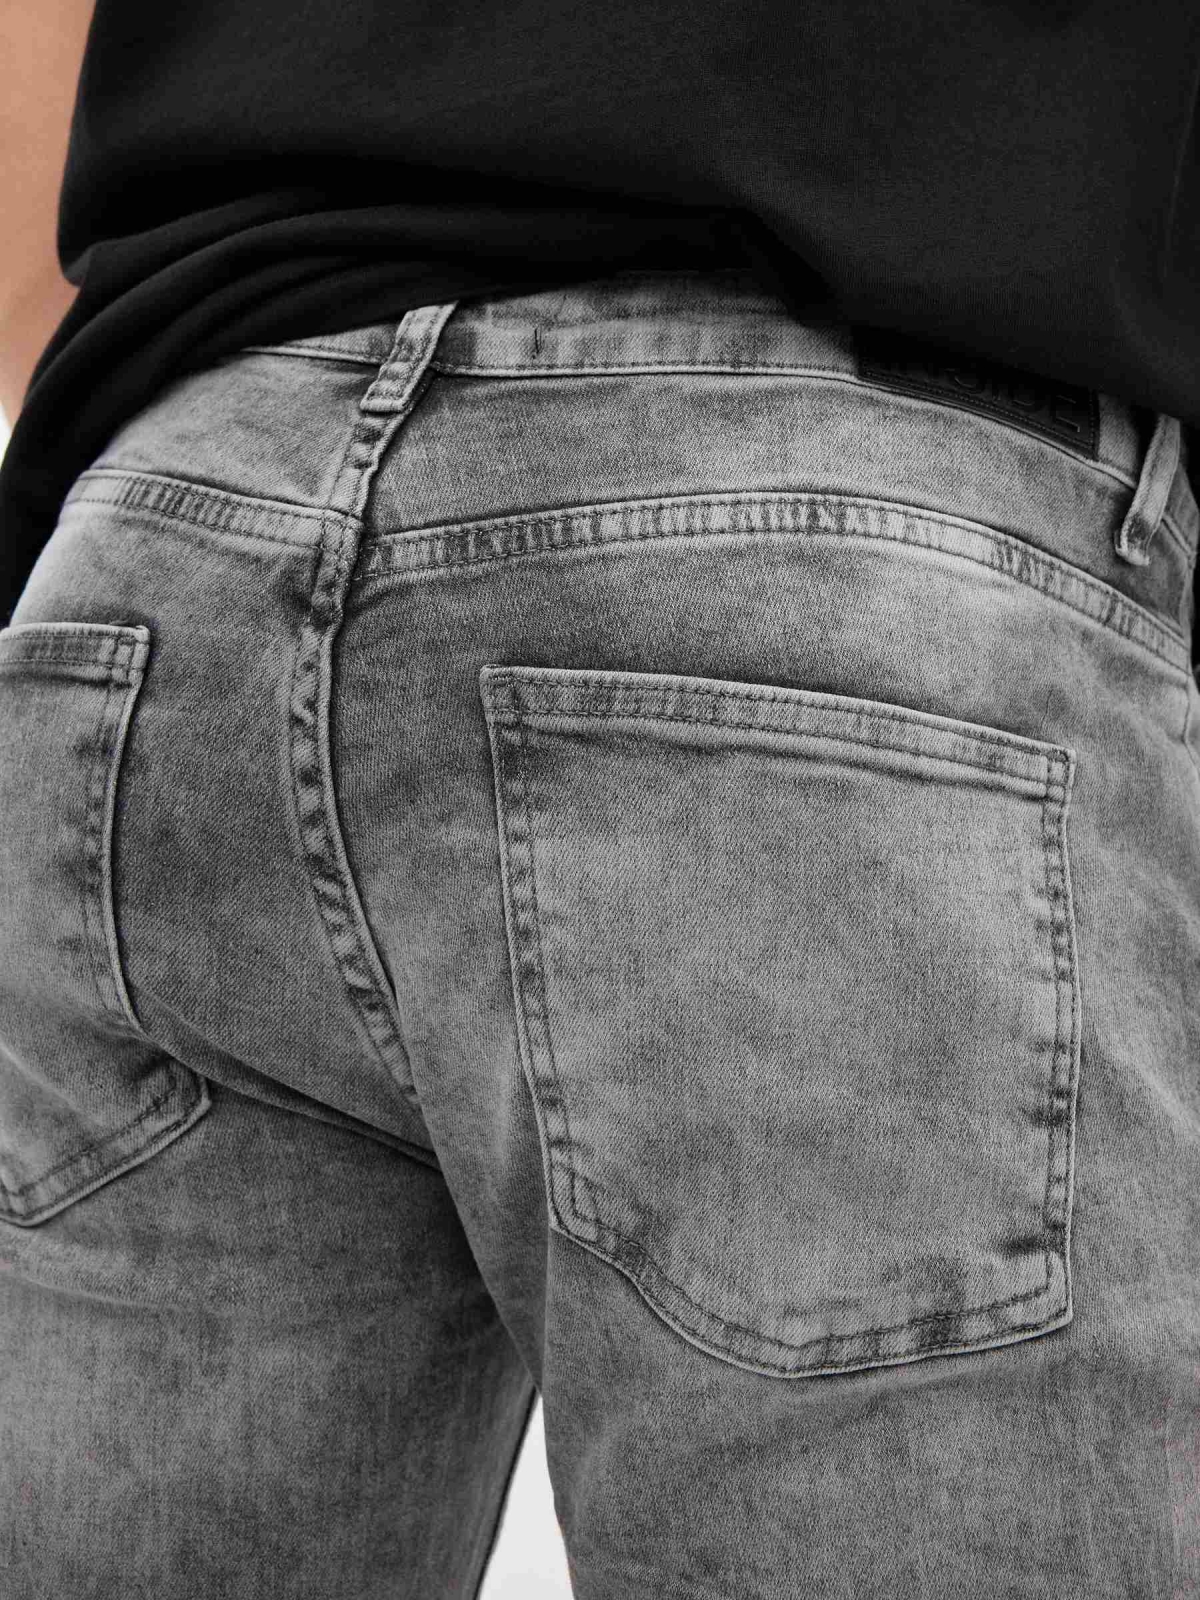 Jeans Slim grises gris oscuro vista detalle